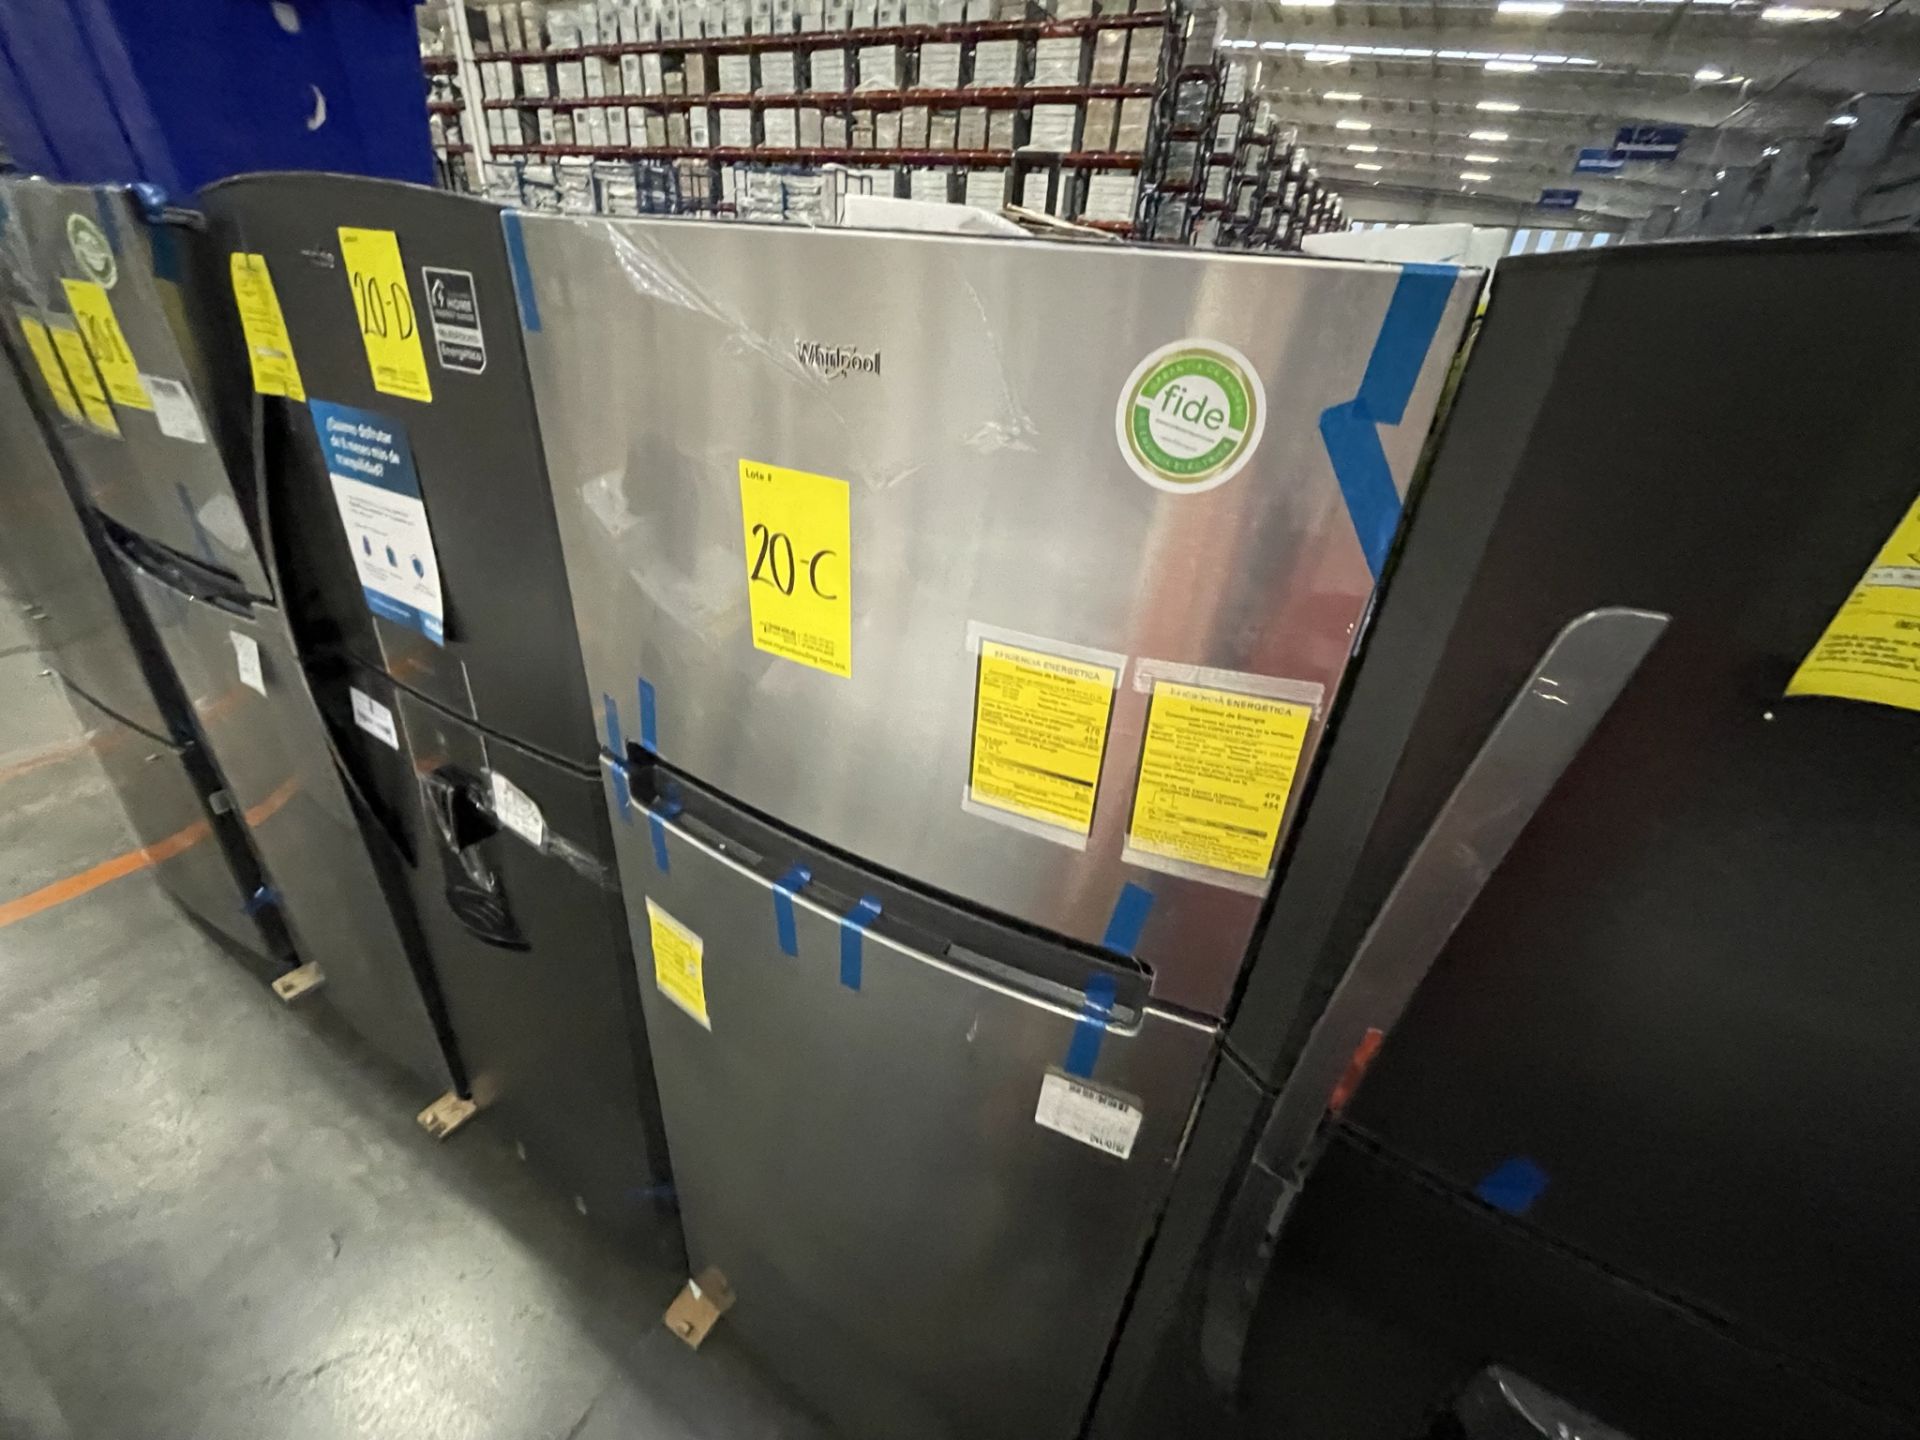 (EQUIPO NUEVO) 1 Refrigerador Marca Whirlpool, Modelo WT1818A, Serie VSB3060855, Color Gris, LB- 62 - Image 3 of 7